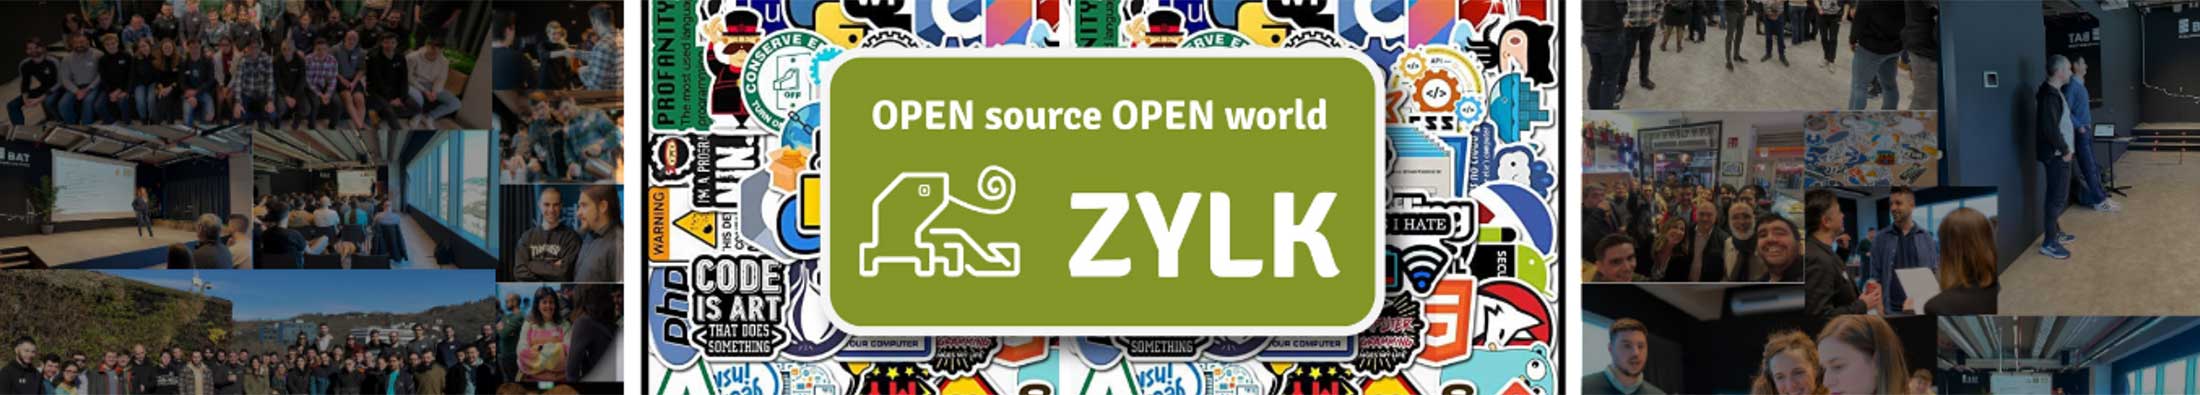 Zylk en Open Source Open World